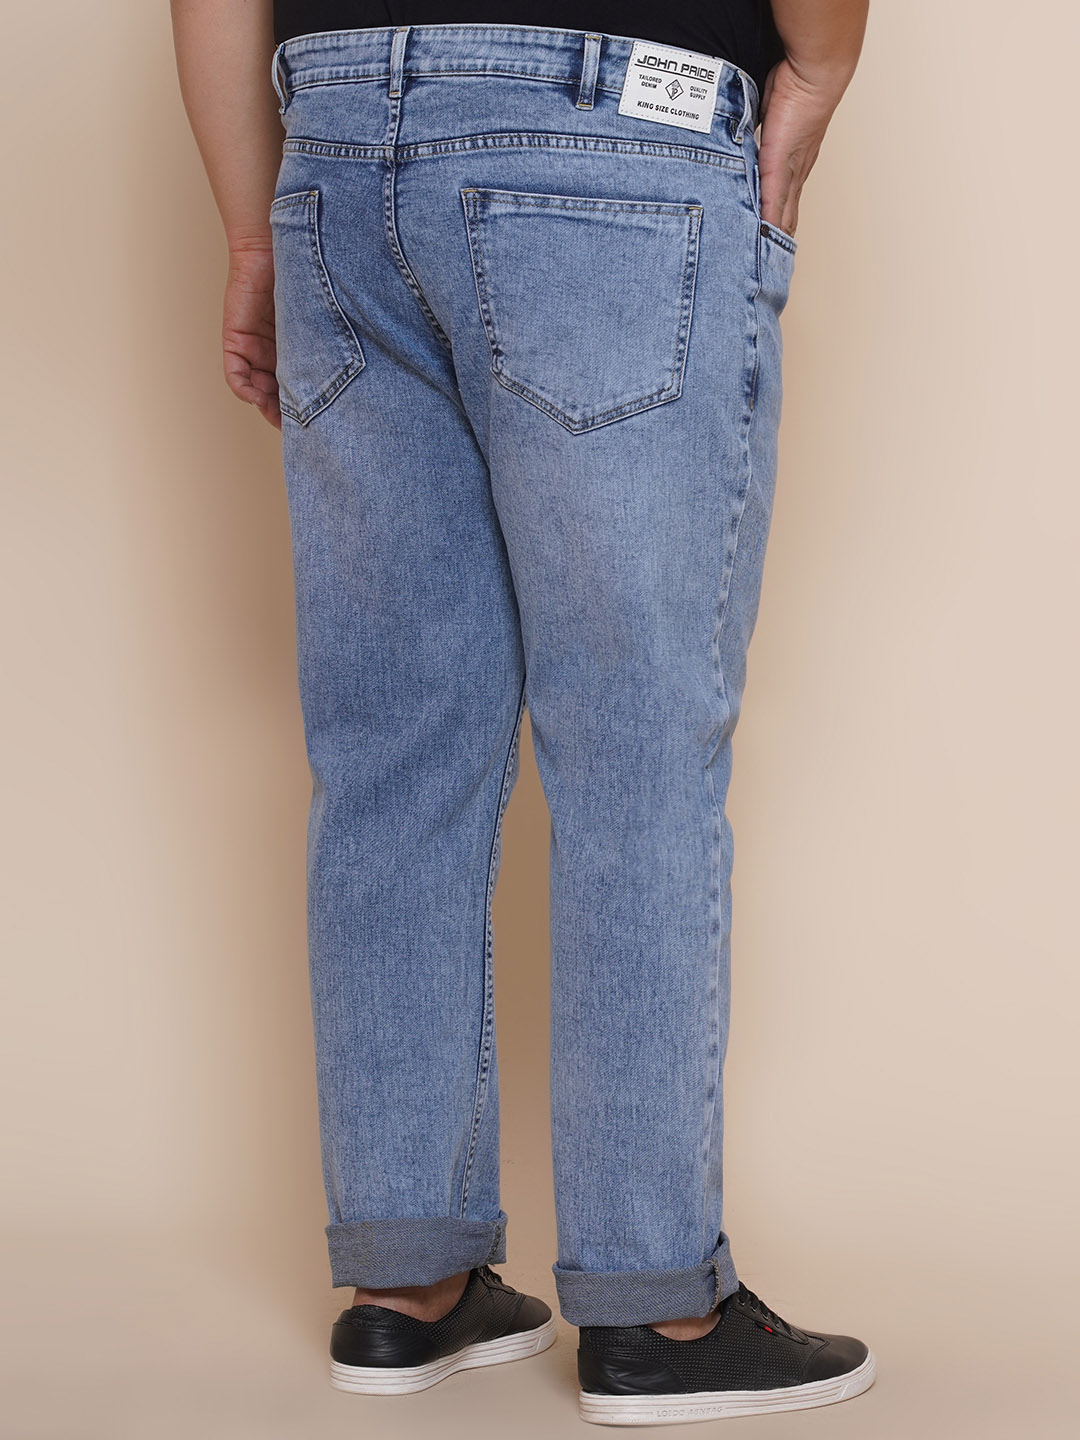 bottomwear/jeans/JPJ27002/jpj27002-5.jpg